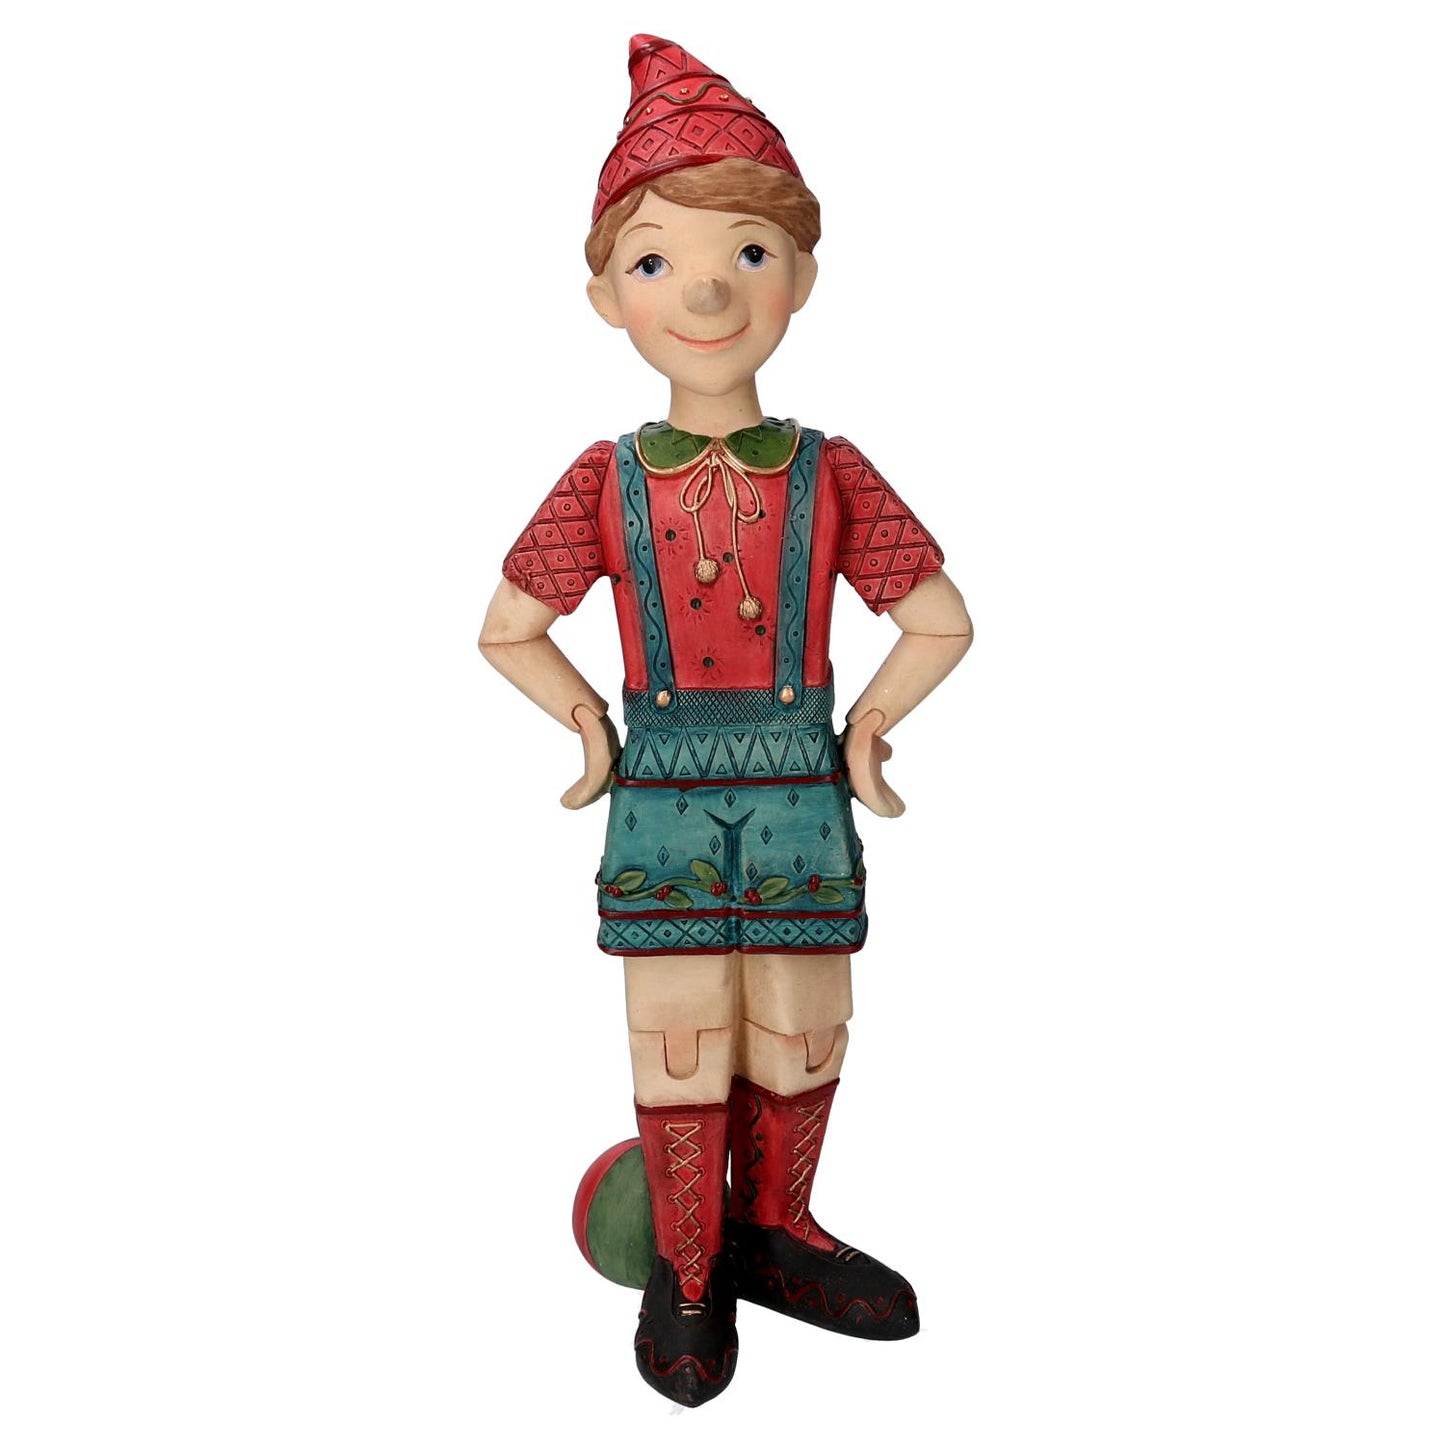 VACCHETTI Statua Statuina Resina Pinocchio 40cm Natale Decorazione Natalizia